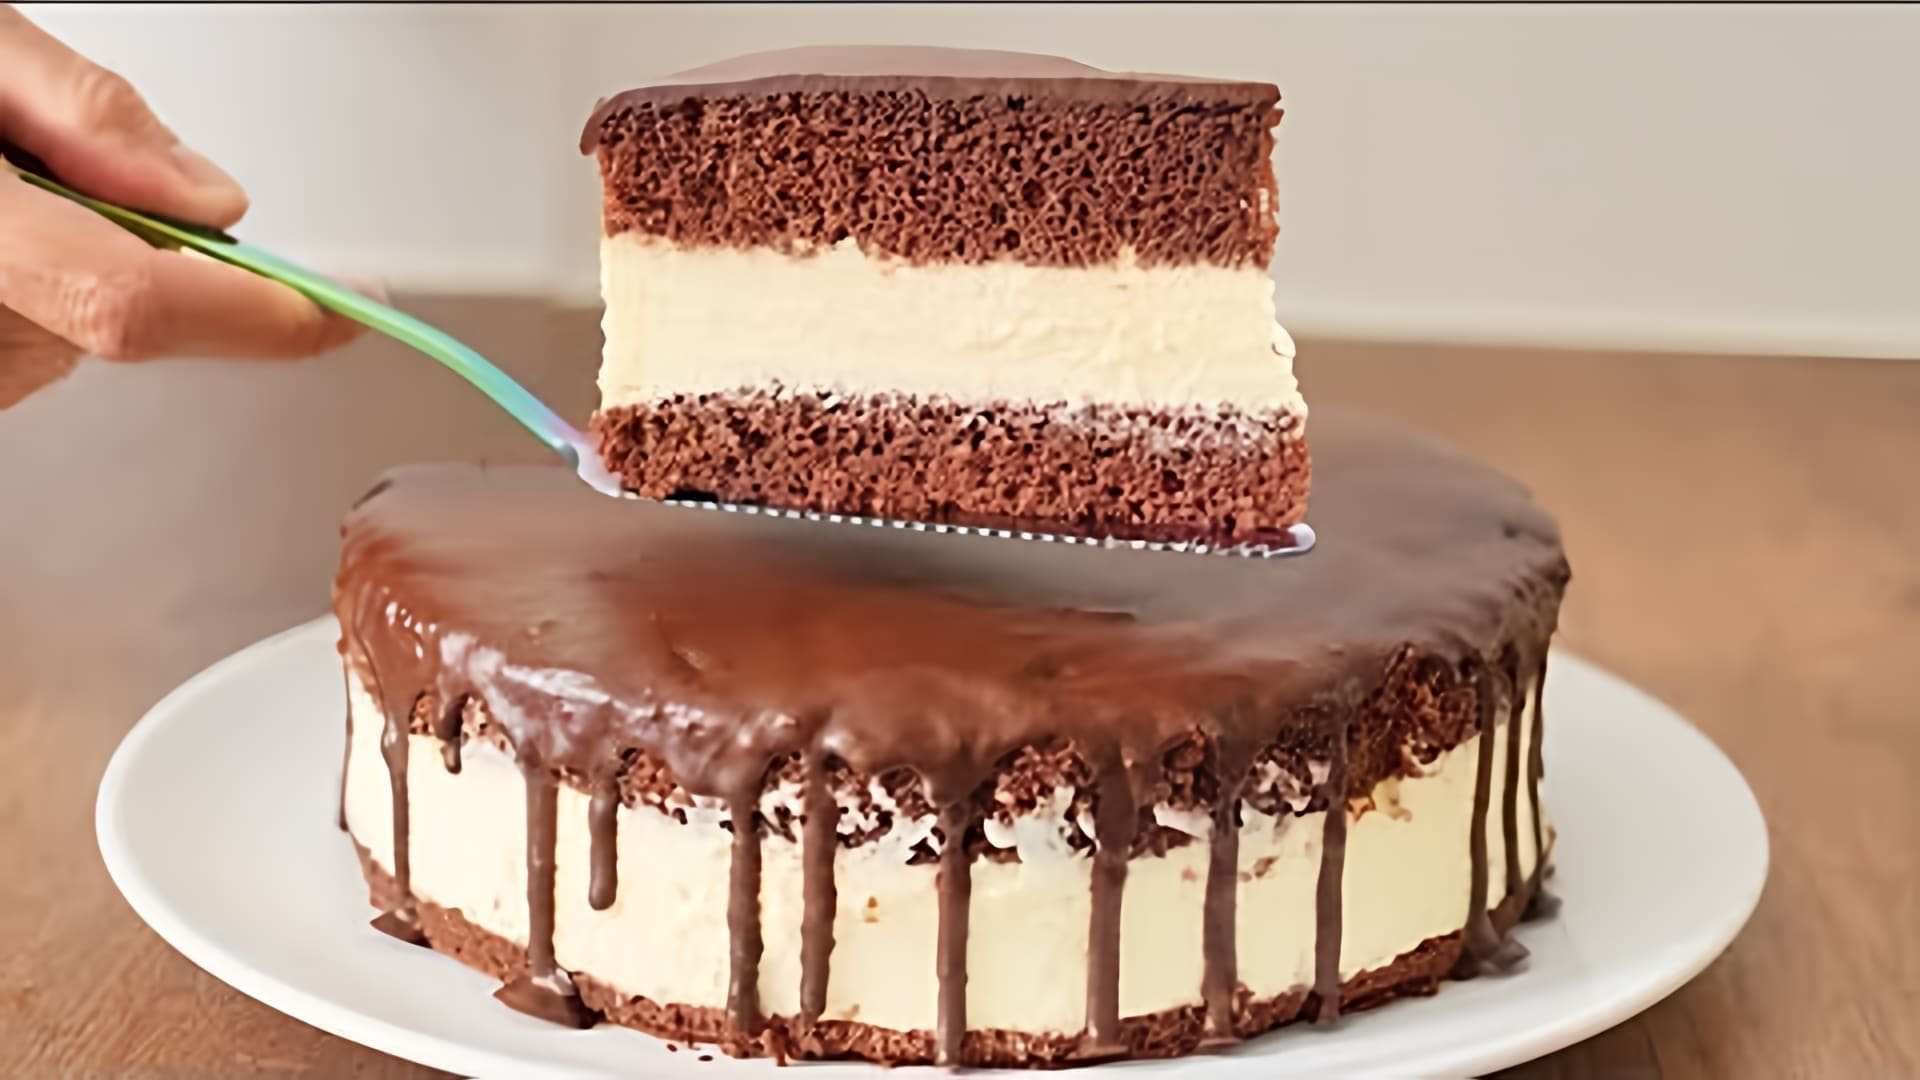 Видео как приготовить вкусный шоколадный торт под названием "Эскимо", с очень вкусным кремовым начинкой